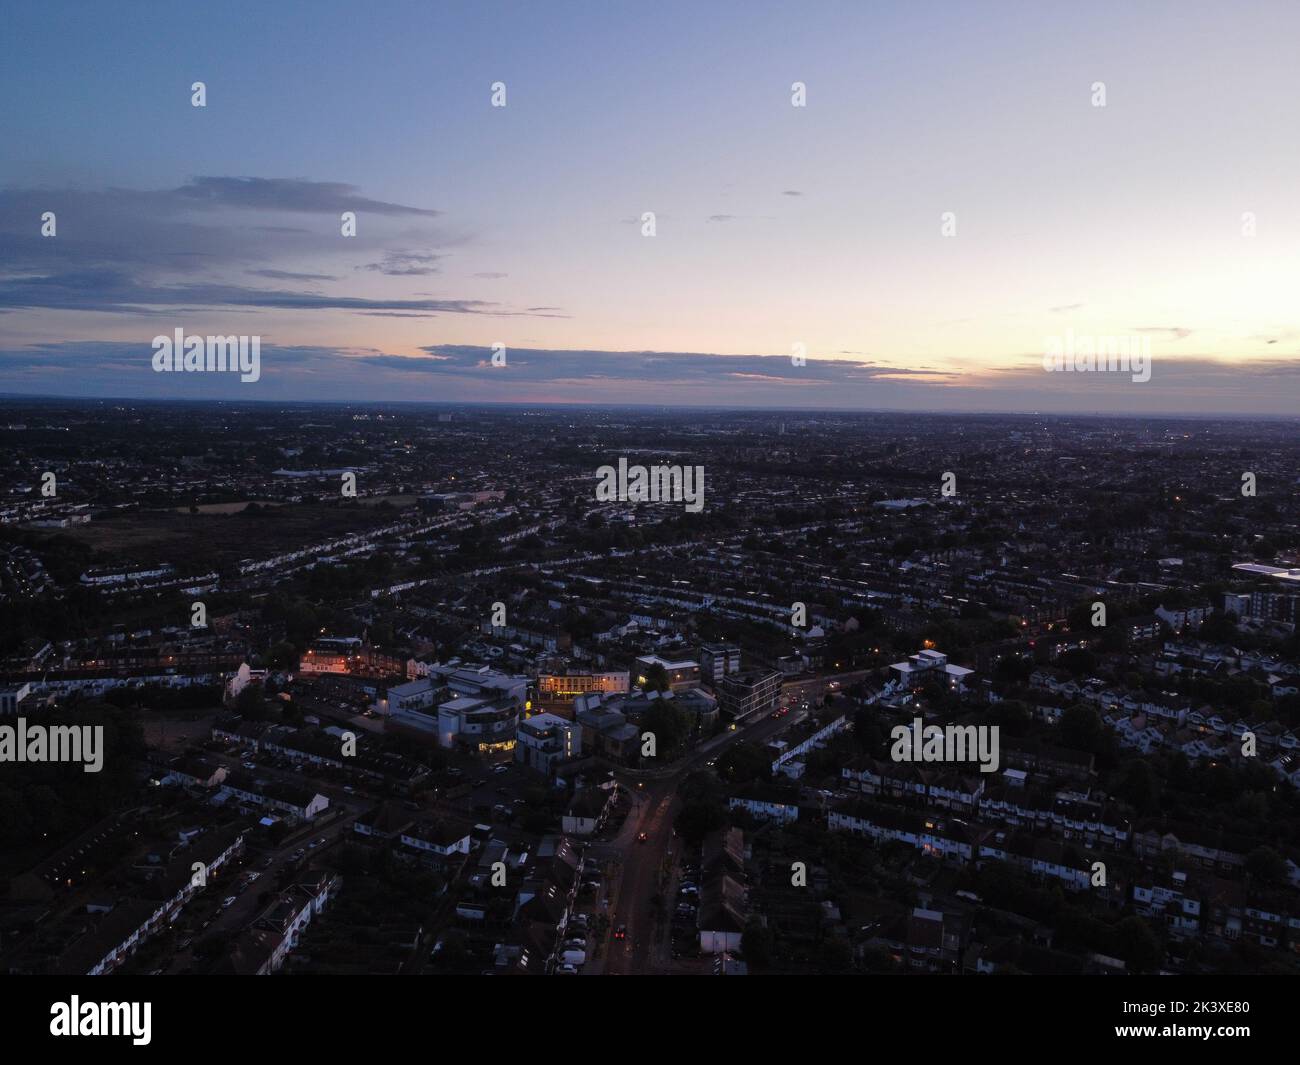 Toma aérea de una puesta de sol naranja sobre una ciudad moderna durante la noche Foto de stock